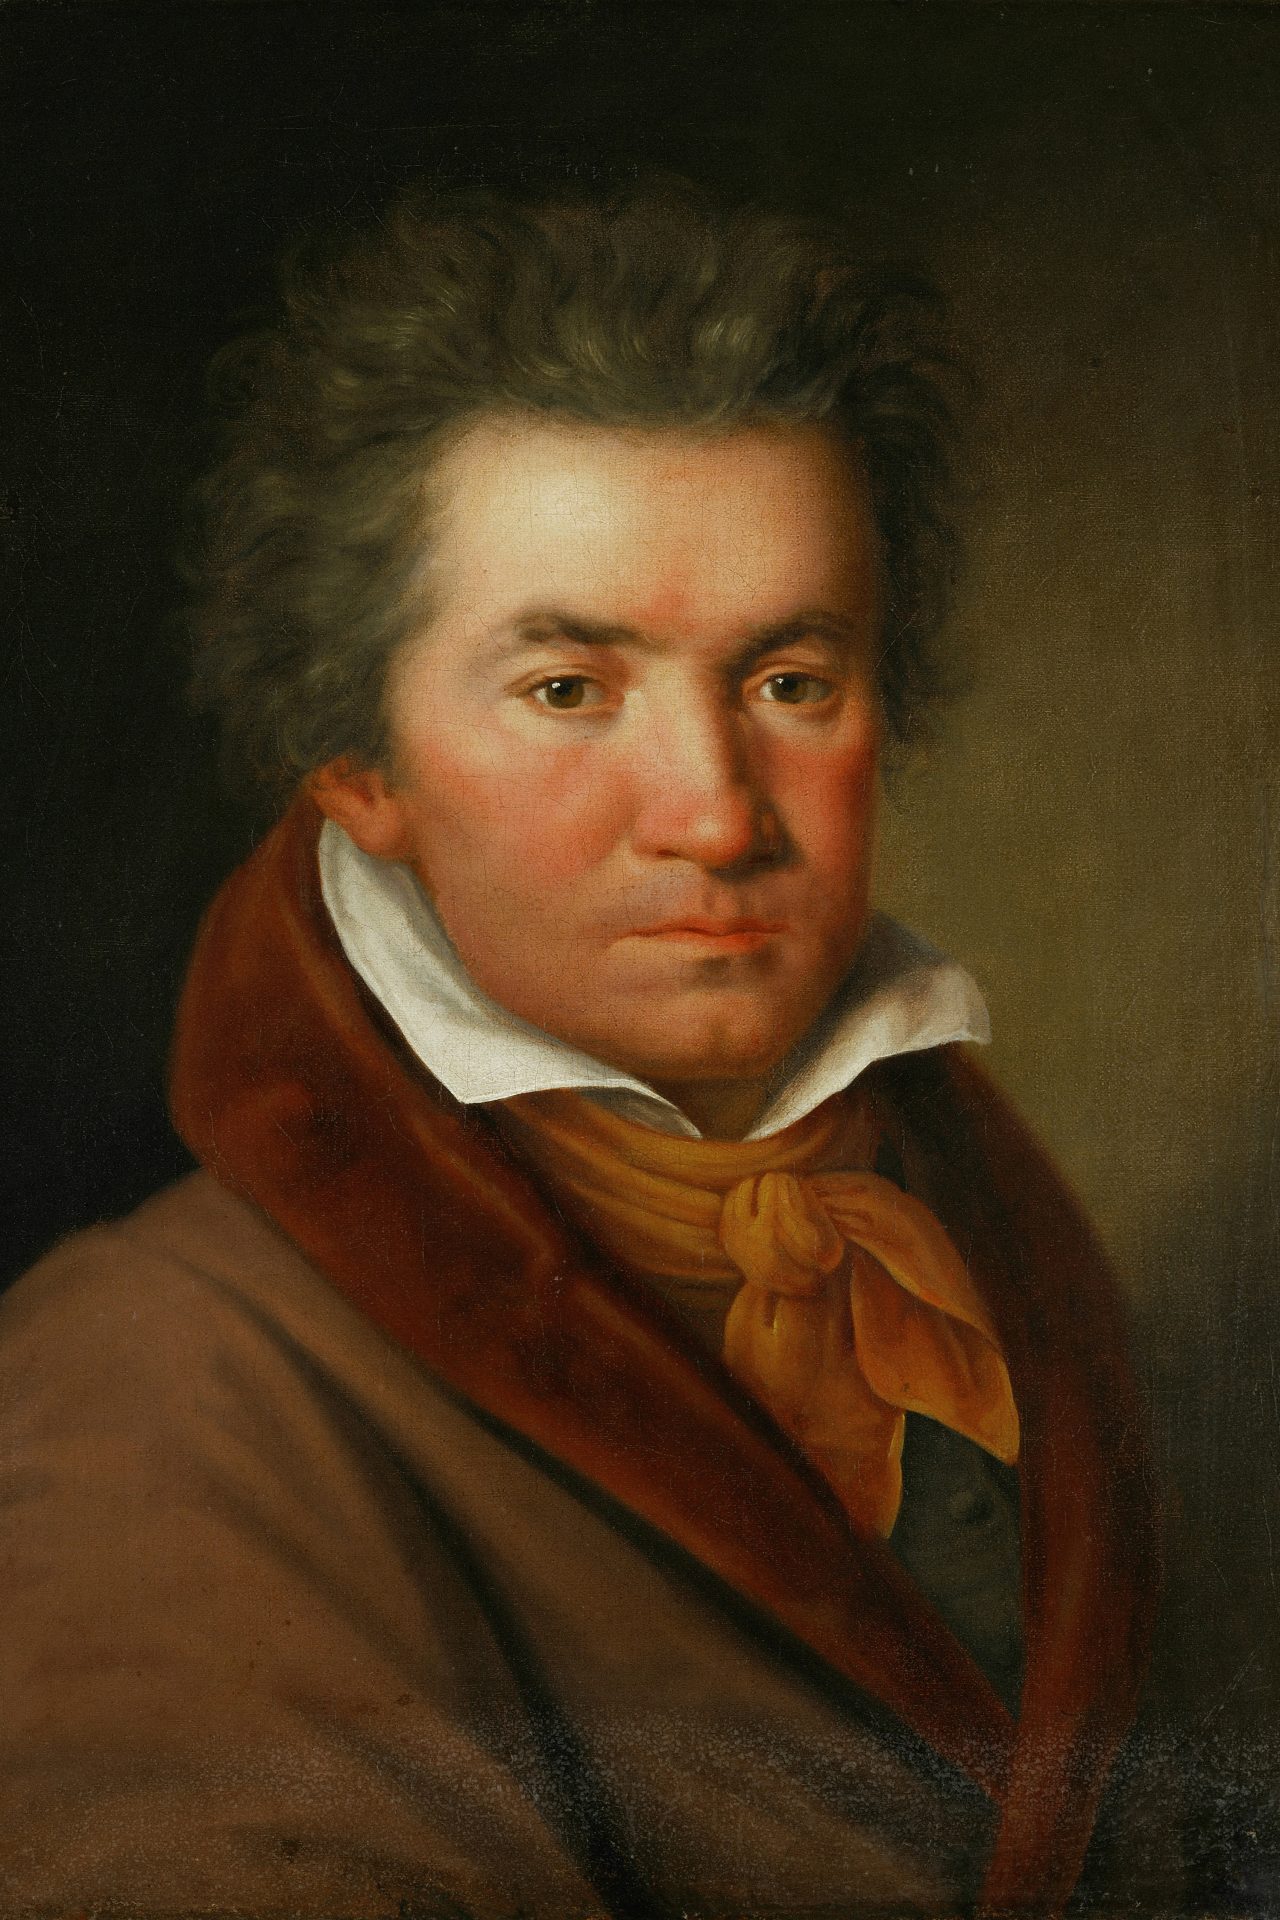 La dernière symphonie de Beethoven